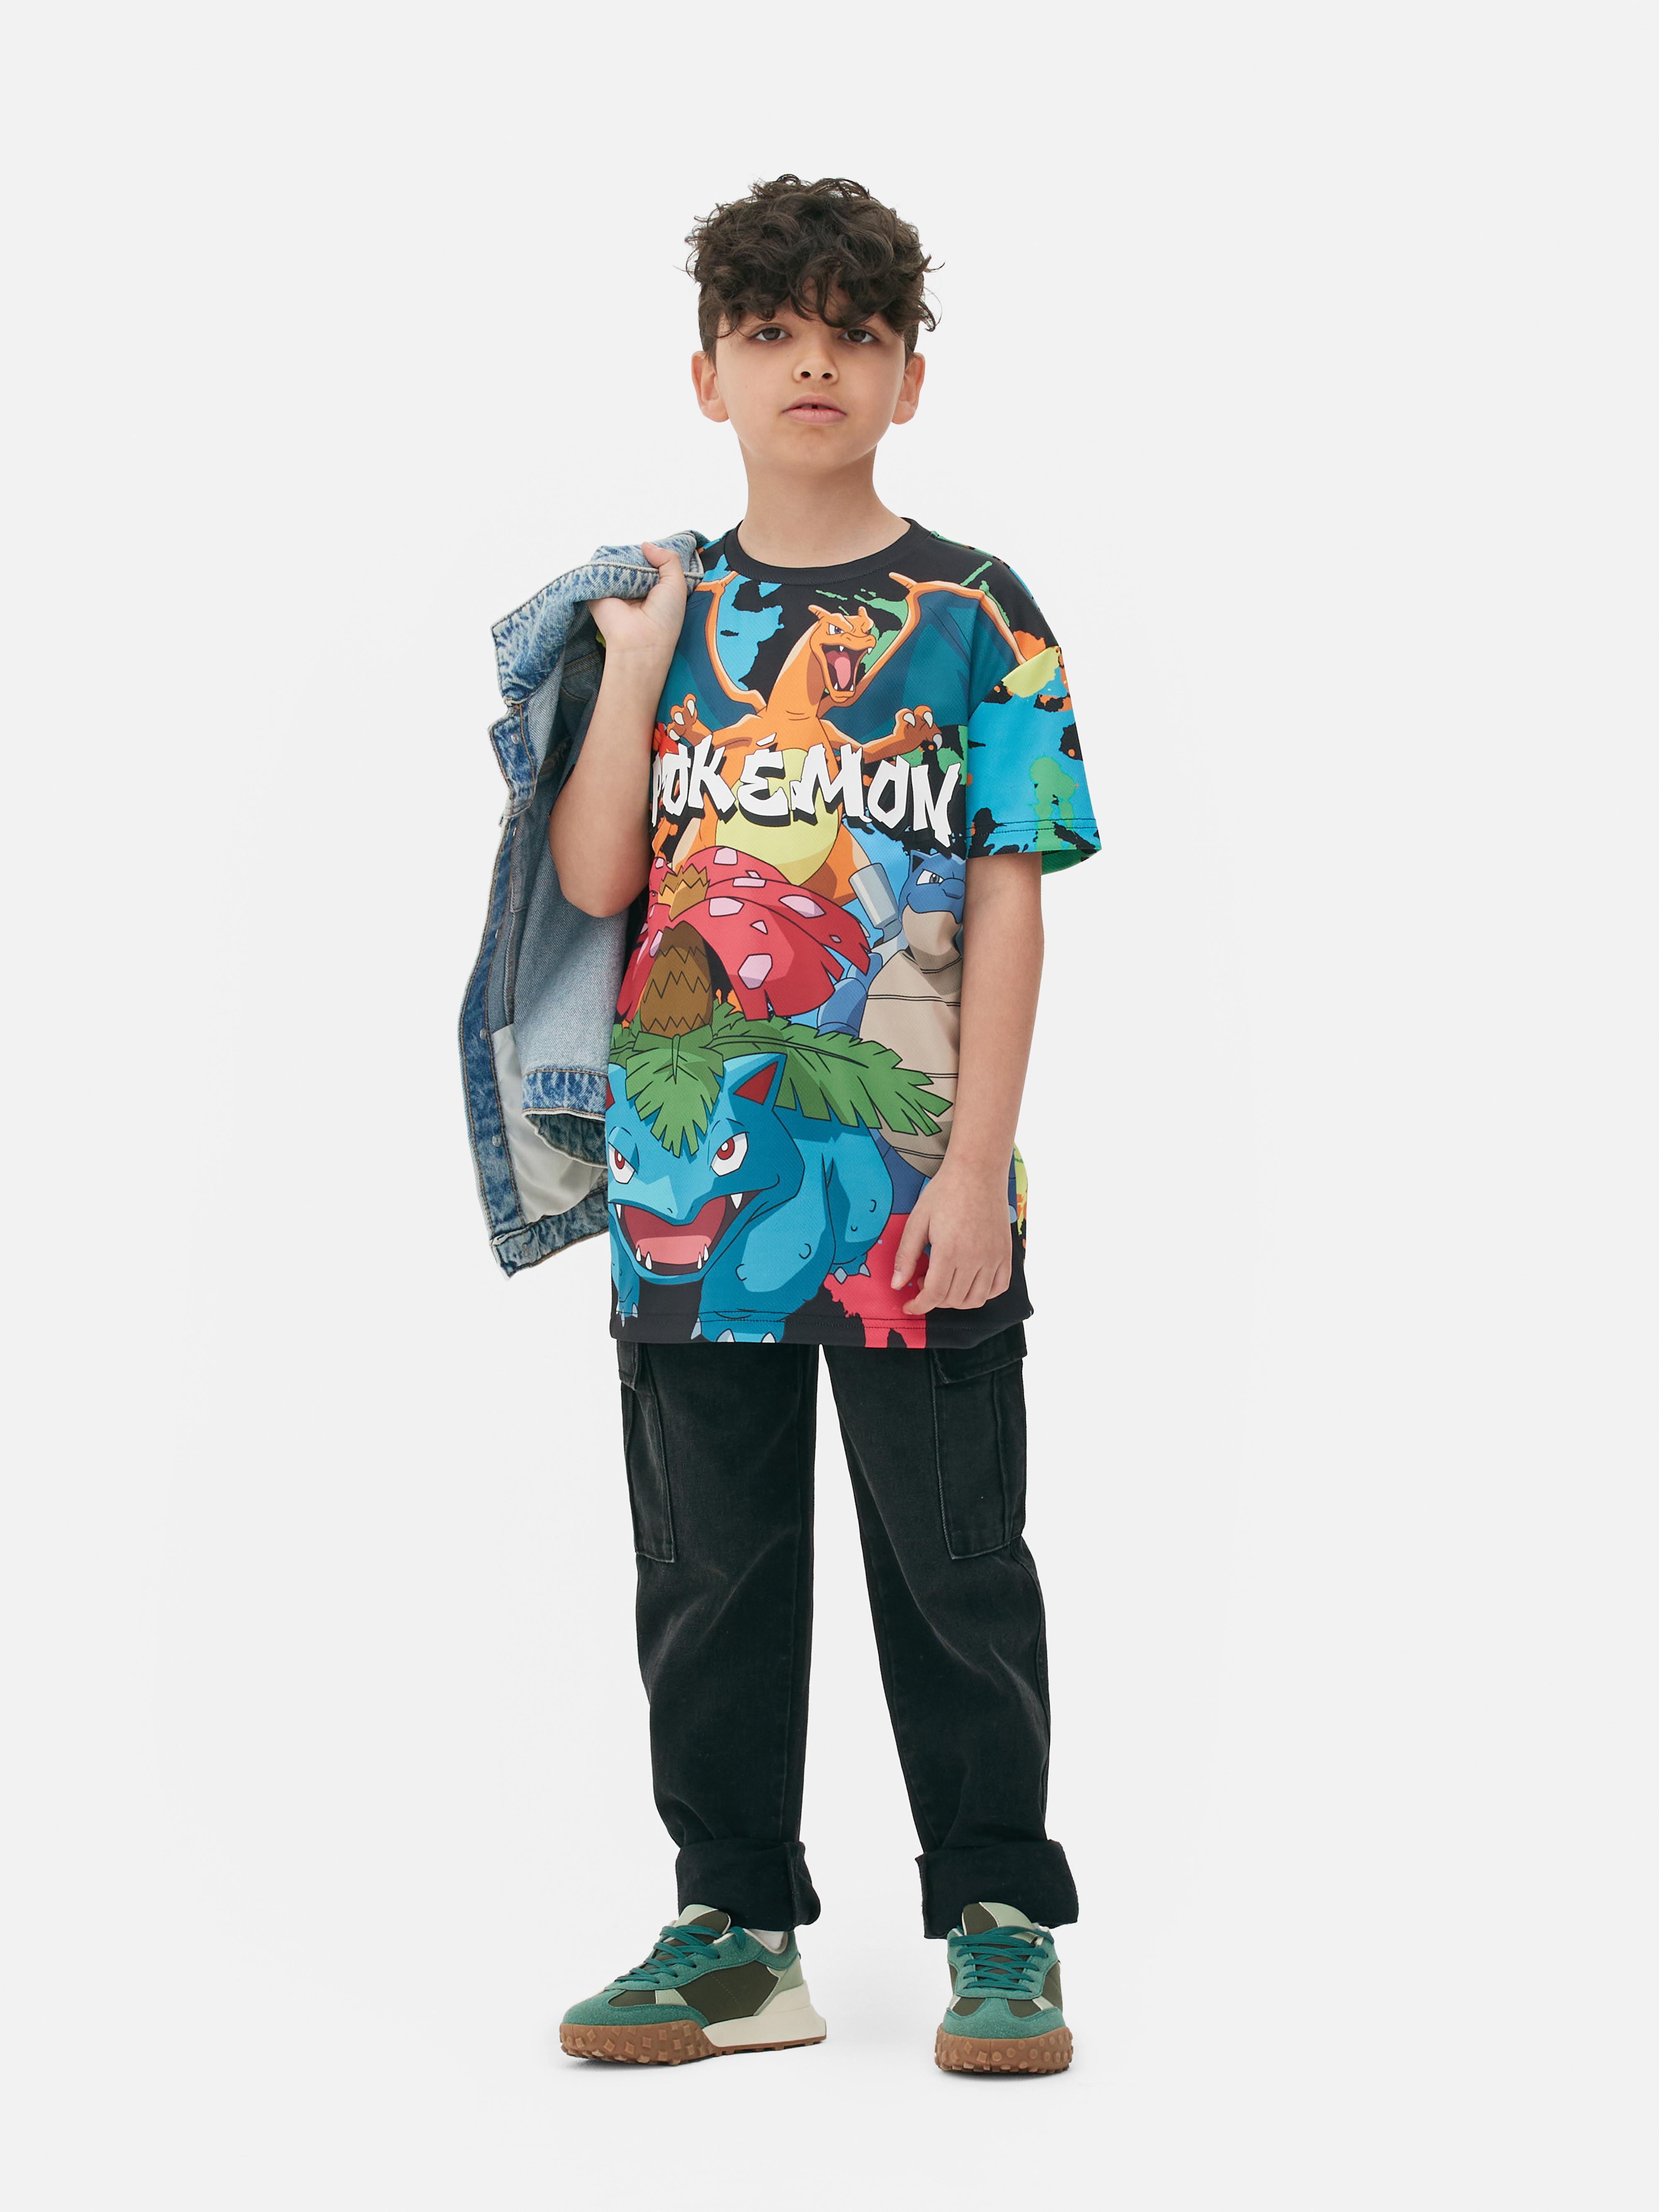 „Pokémon“ T-Shirt mit Farbspritzern